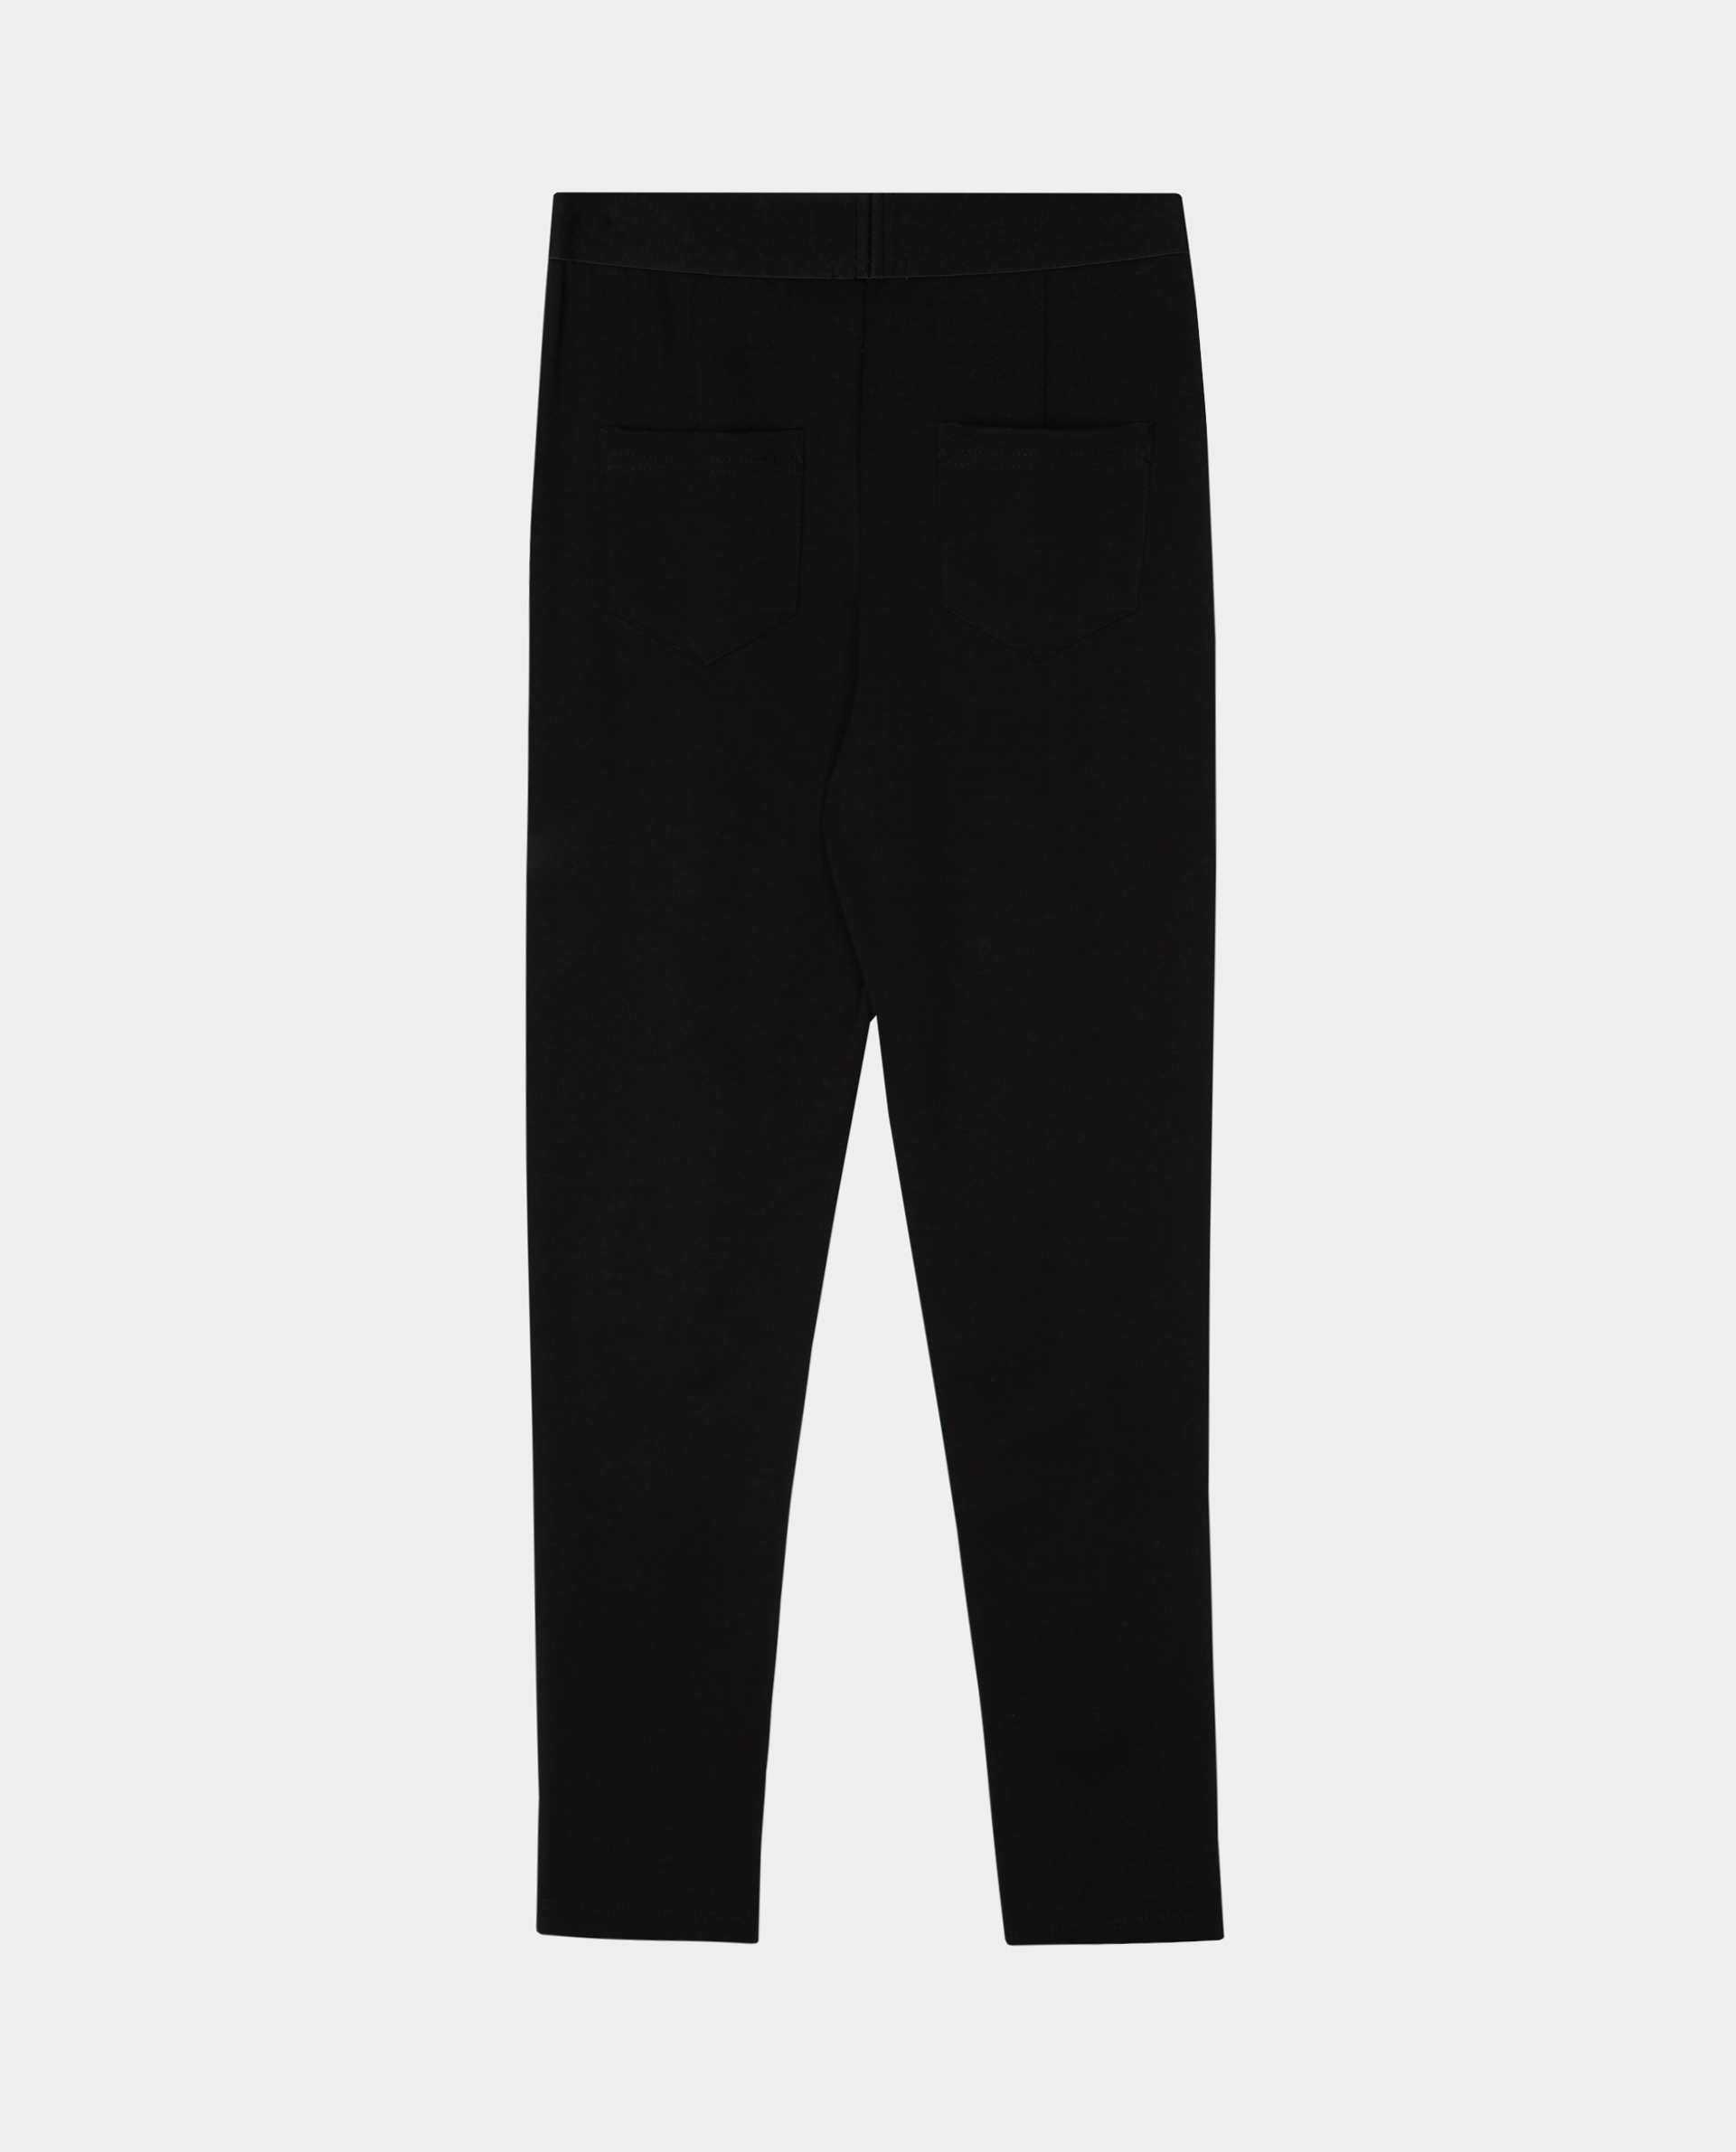 Черные брюки из джерси Gulliver 220GSGC5601, размер 152, цвет черный regular fit / прямые - фото 5